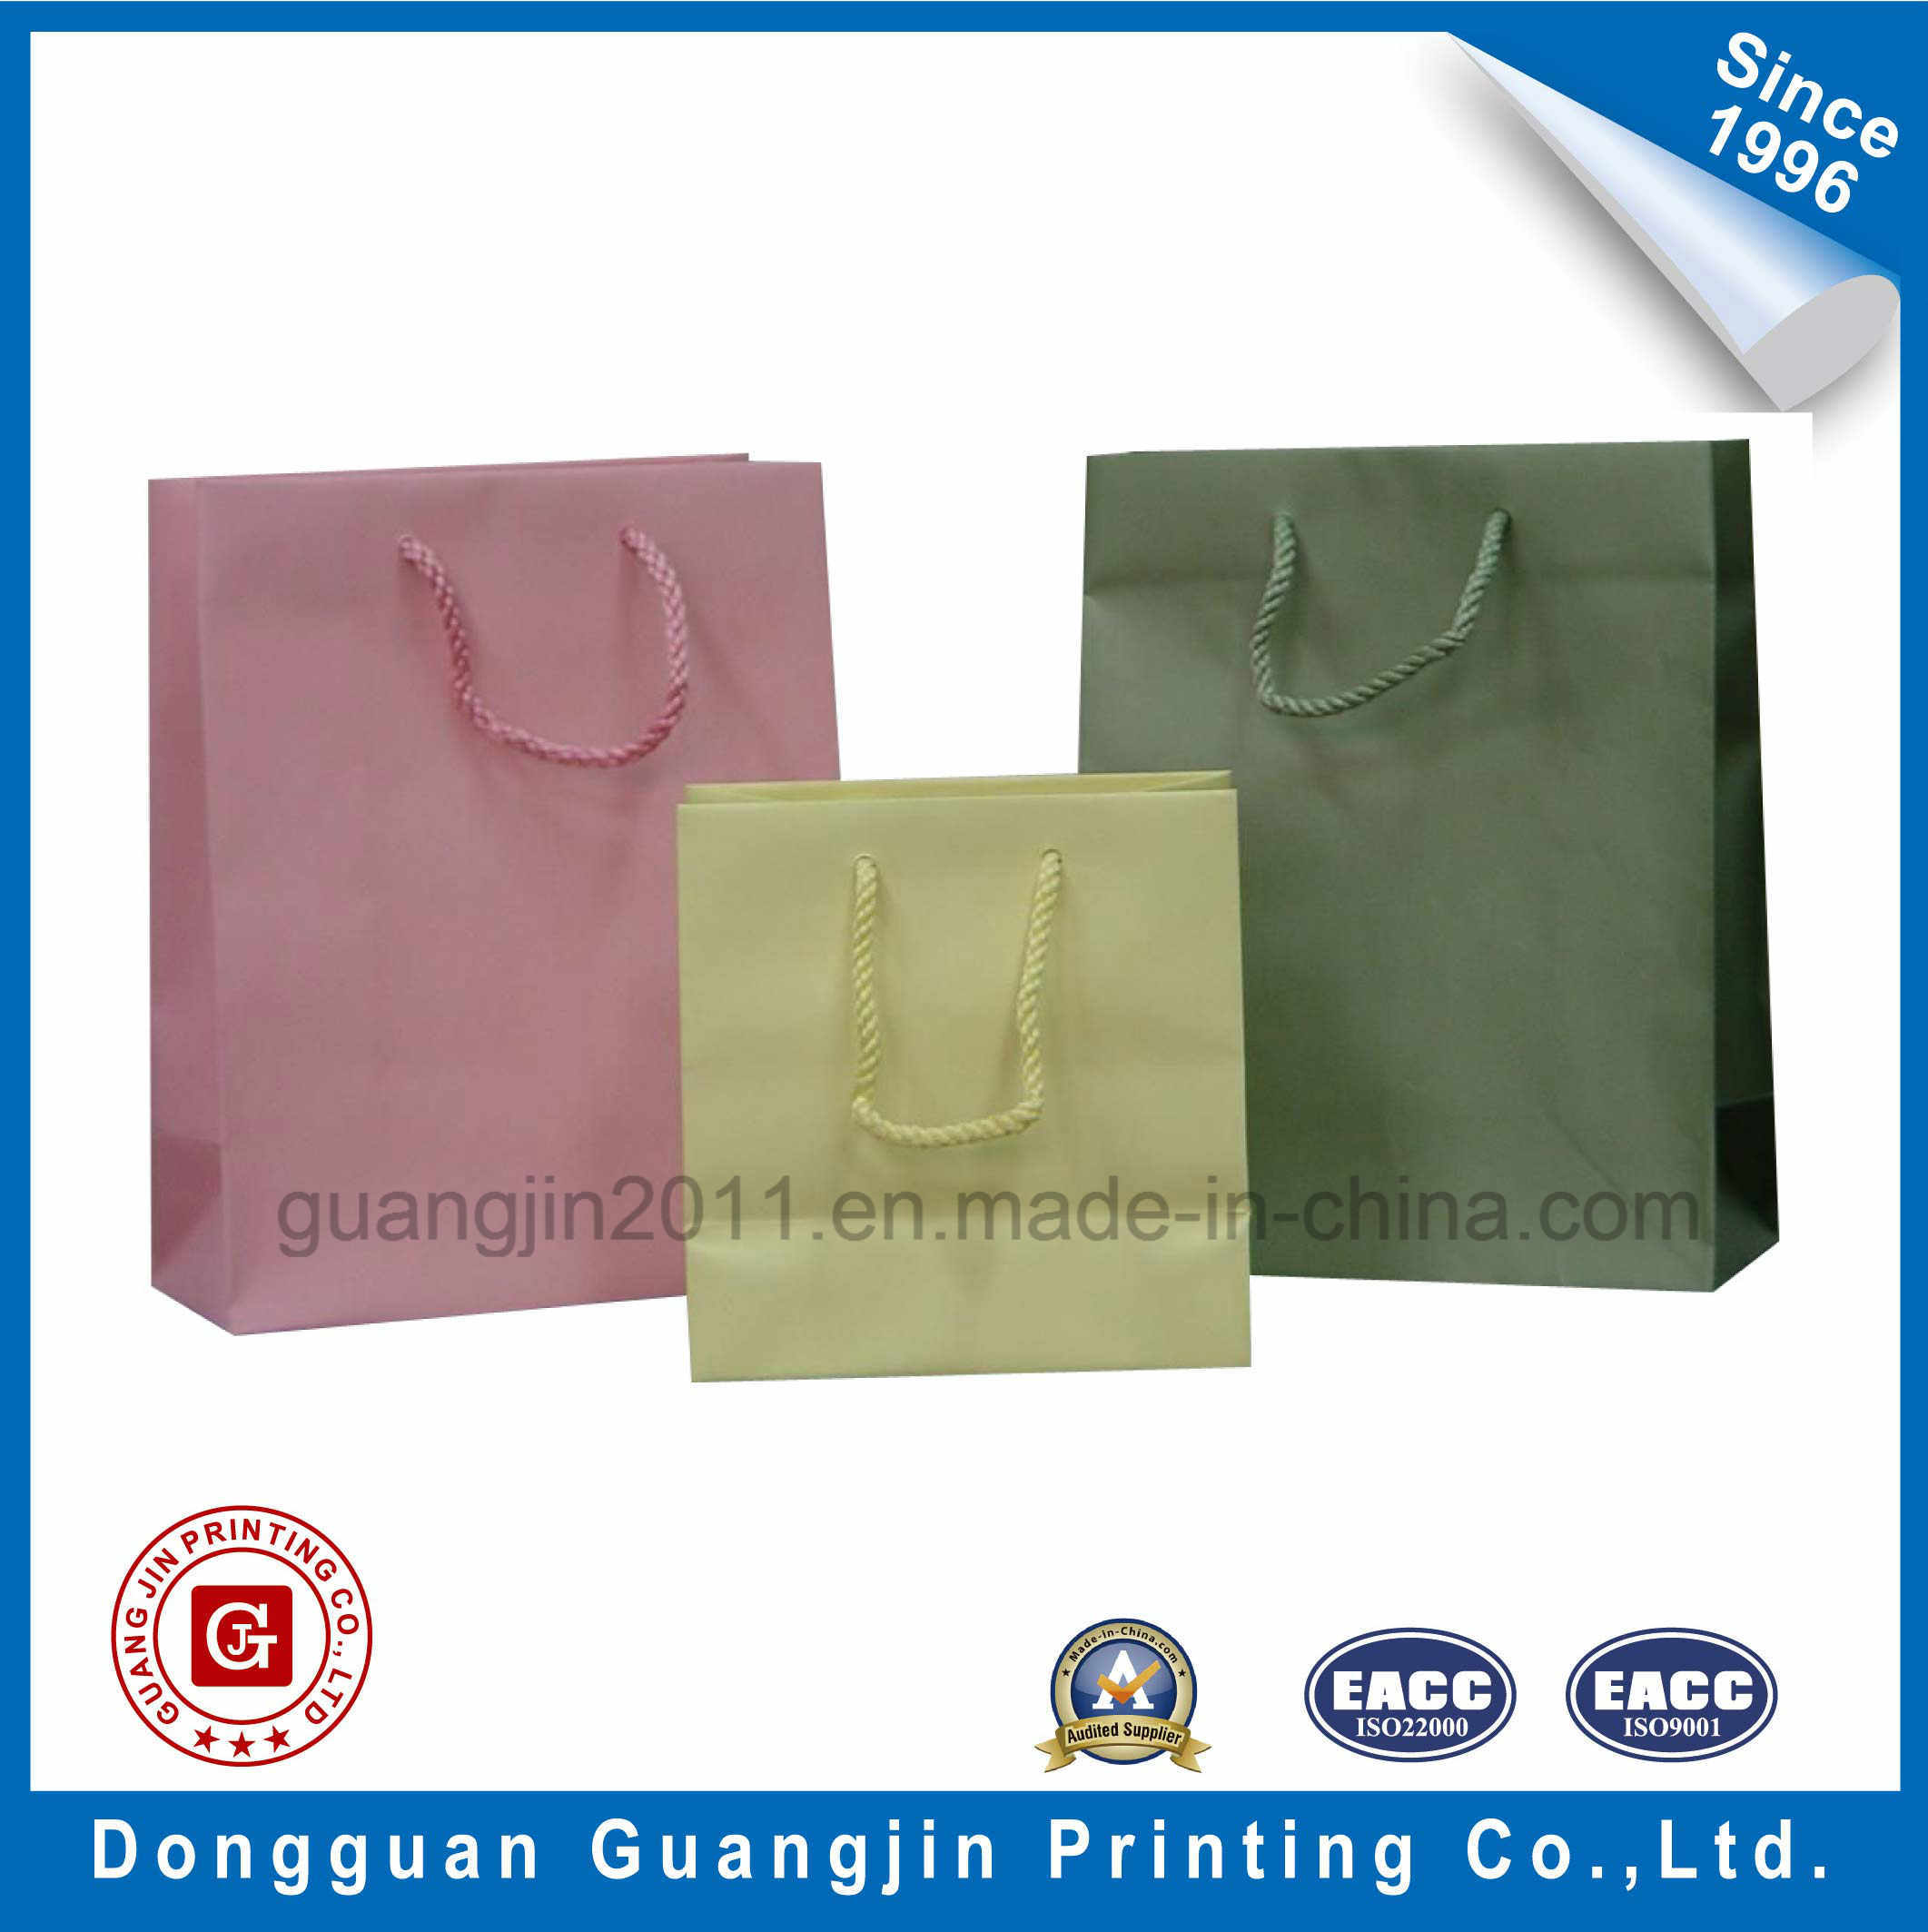 Simple Design Kraft Paper Shopping Bag for Garment Packing